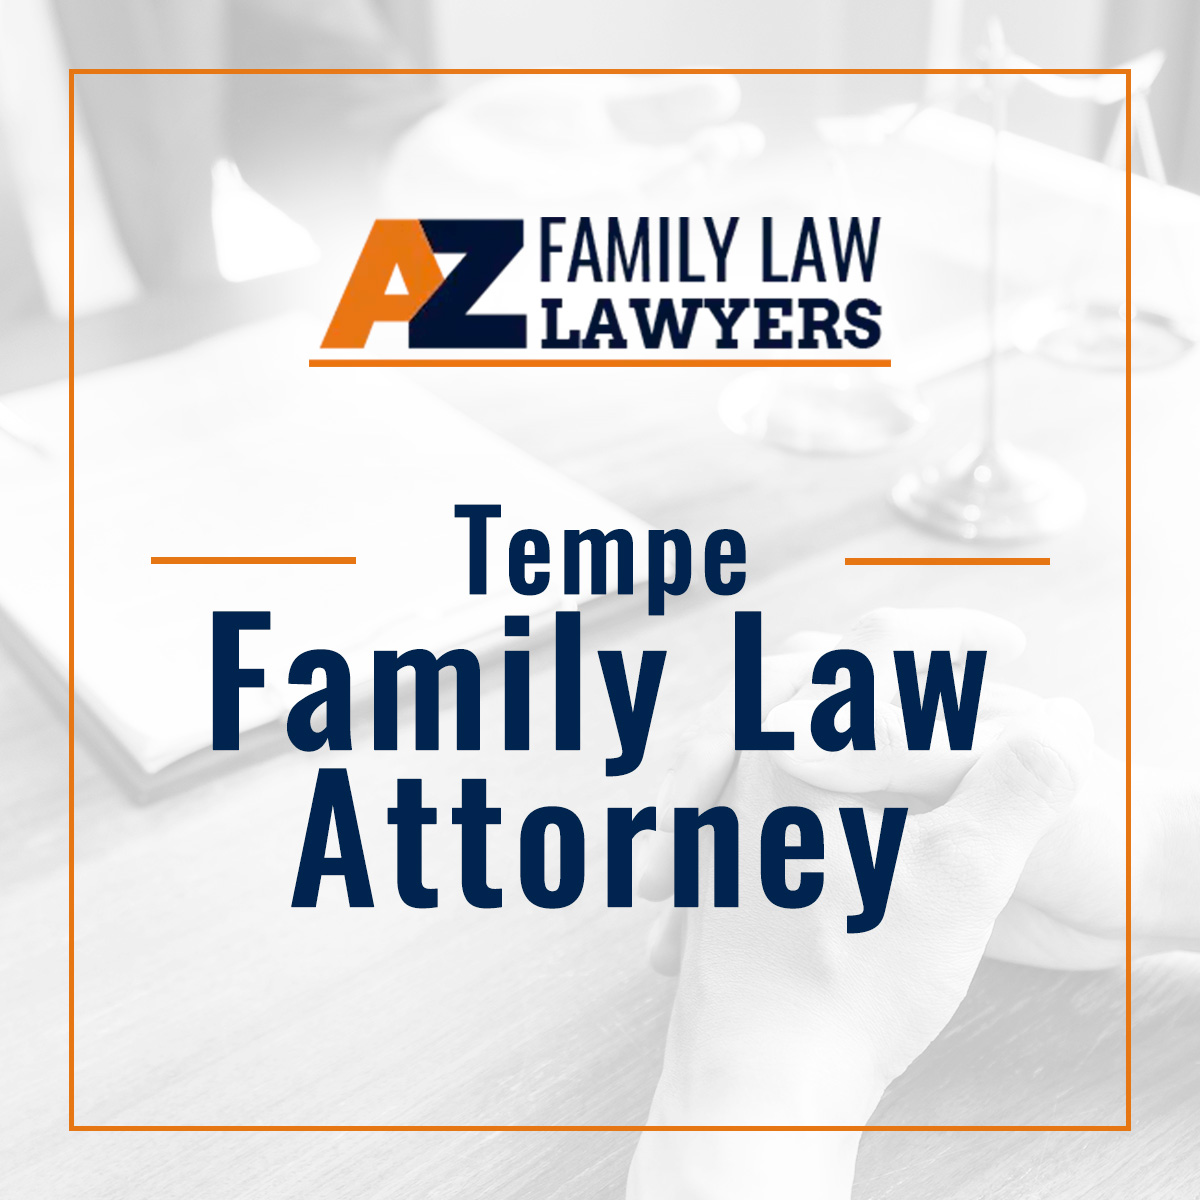 Tempe Family Law Attorneys https://azfamilylawlawyer.com/